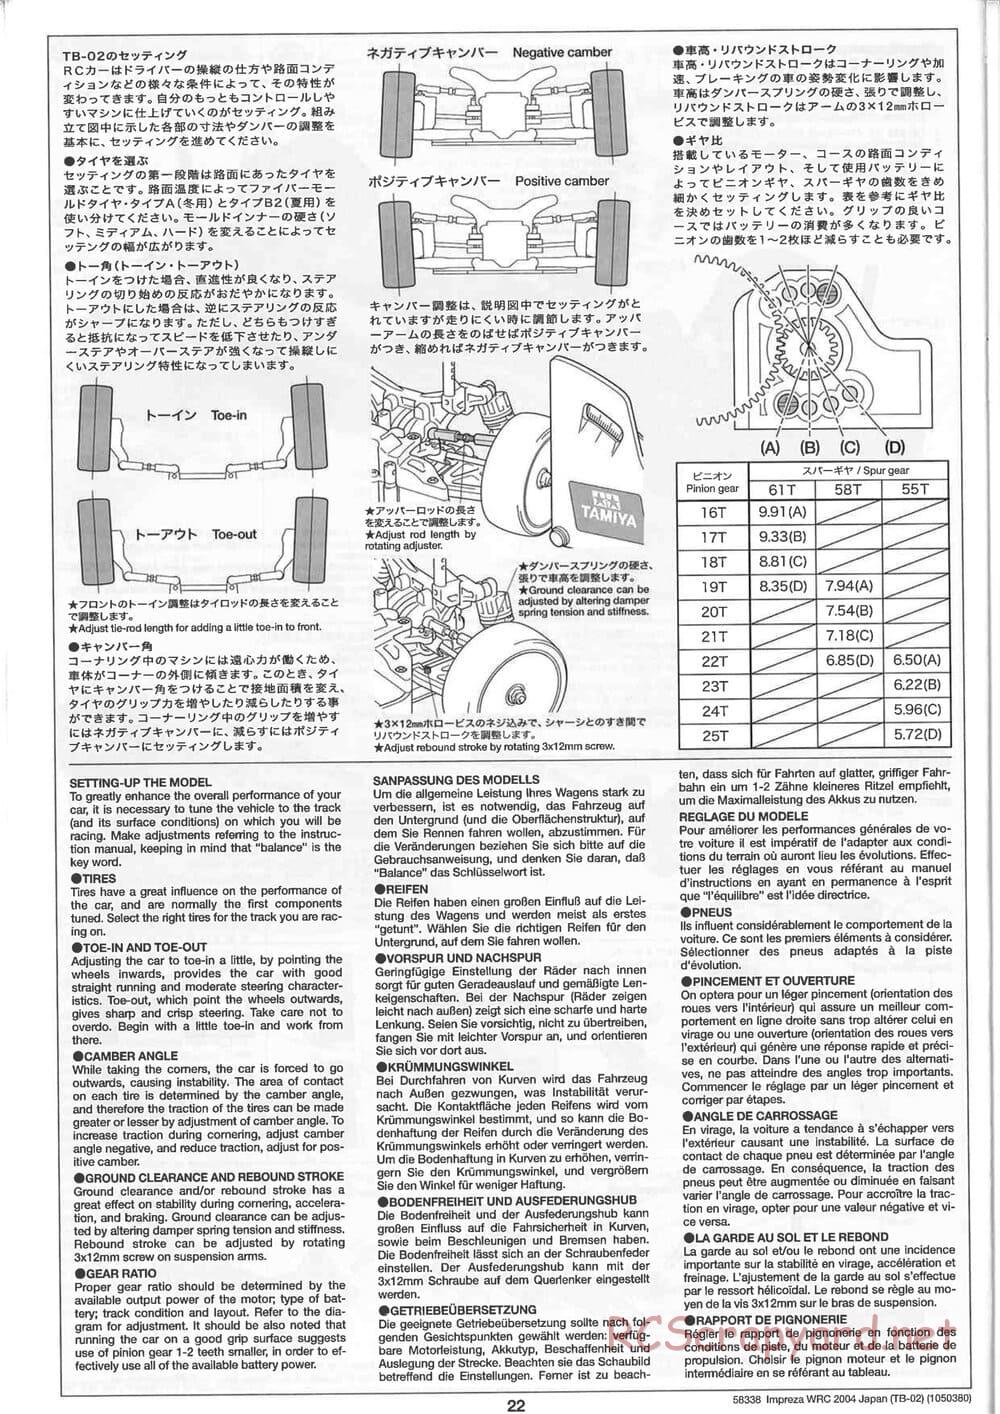 Tamiya - Subaru Impreza WRC 2004 Rally Japan - TB-02 Chassis - Manual - Page 22